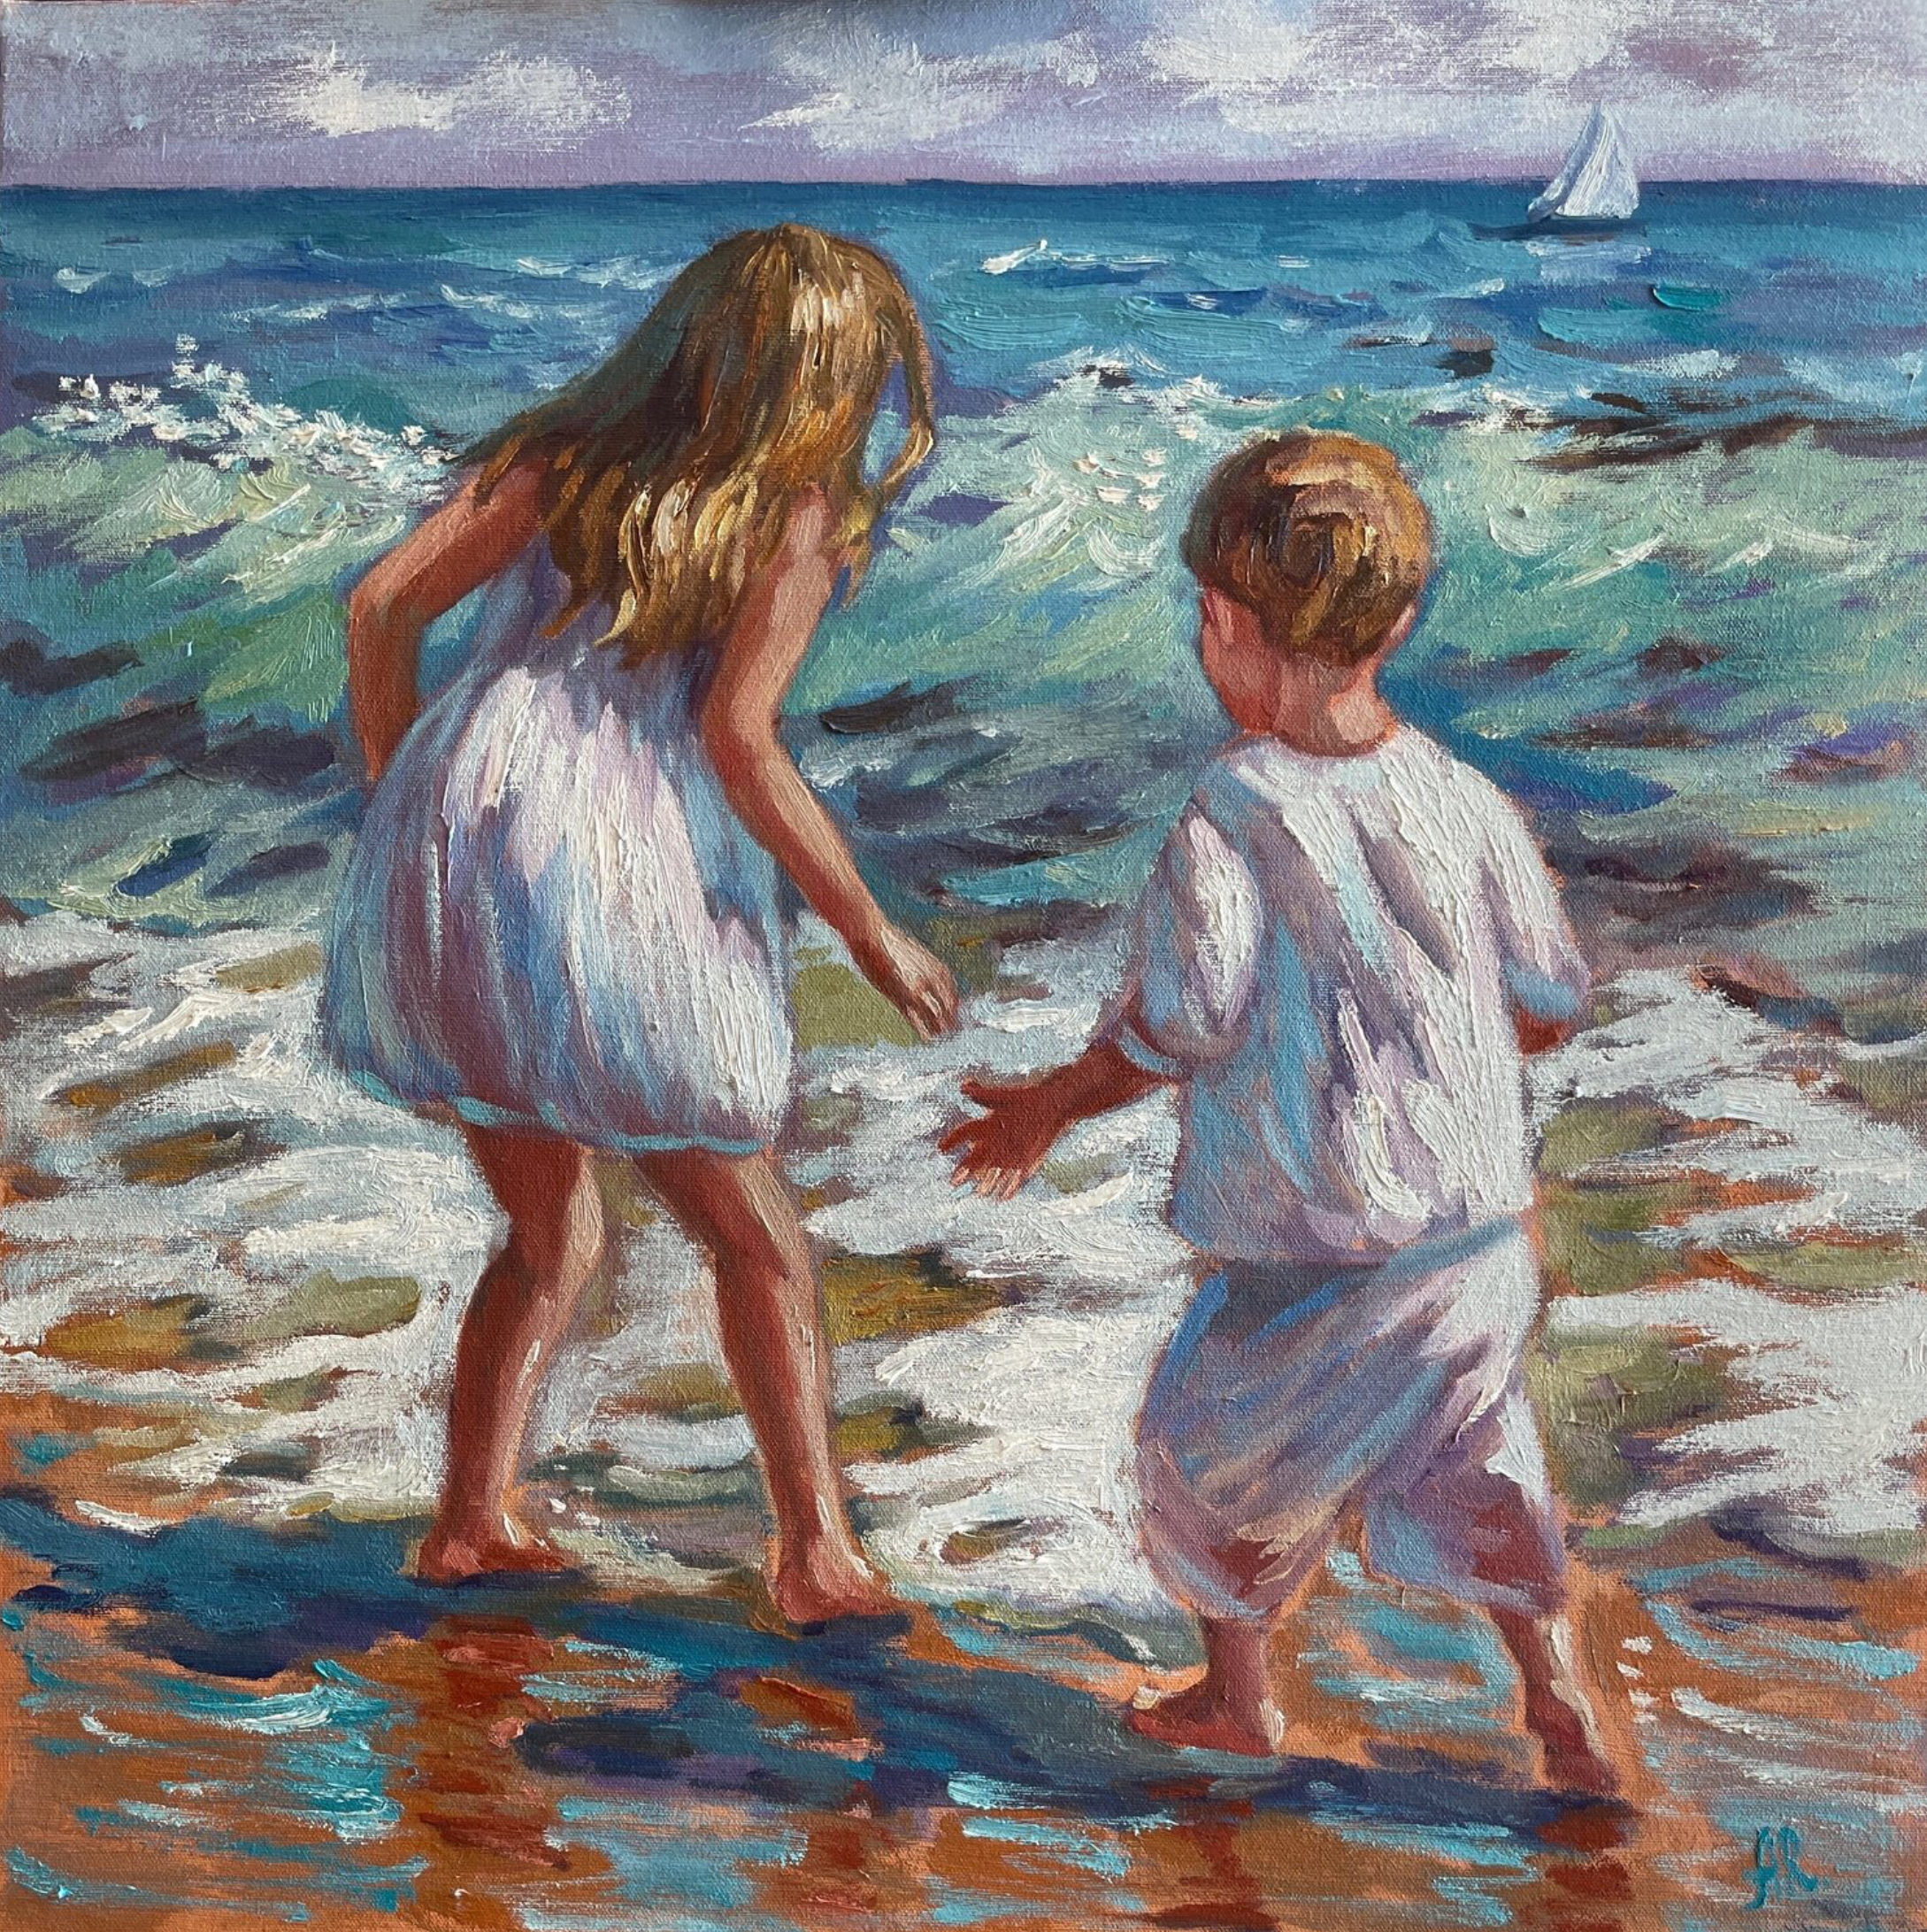 Il dipinto "Chasing the Waves" di Anna Reznikova mostra dei bambini che giocano in riva al mare. I colori sono prevalentemente turchese e blu.